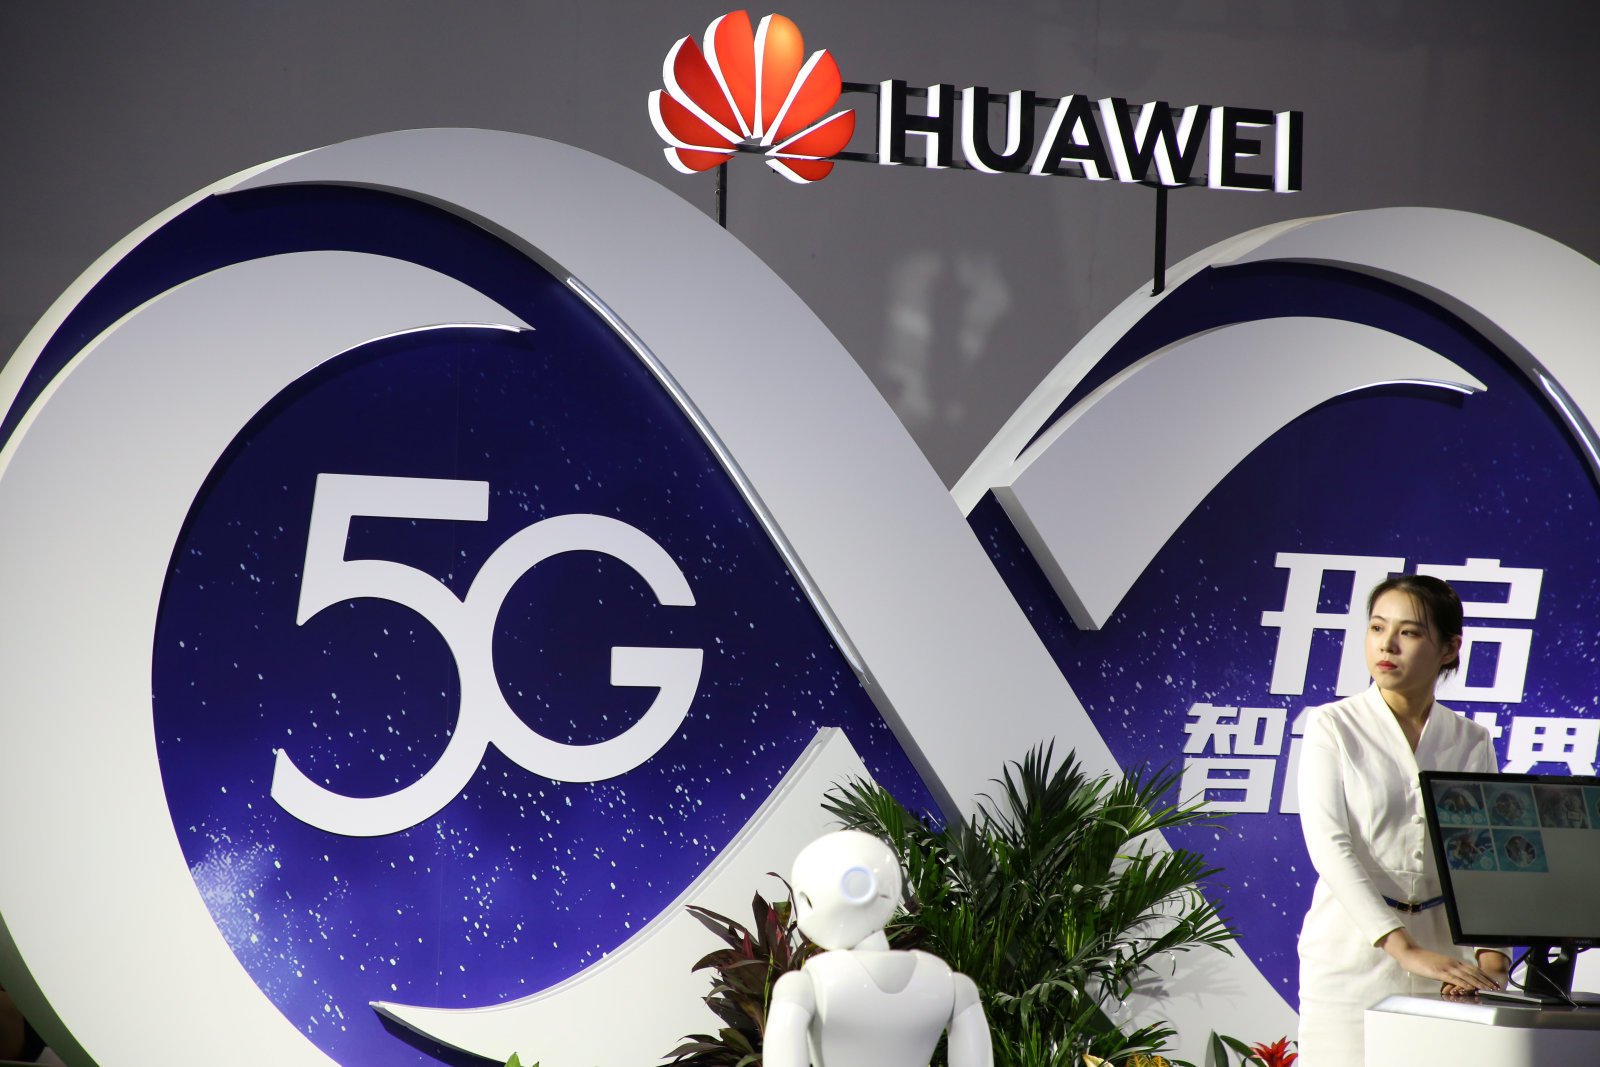 Οι ΗΠΑ προειδοποιούν άλλες χώρες να μην χρησιμοποιήσουν εξοπλισμό της Huawei στις υποδομές 5G τους